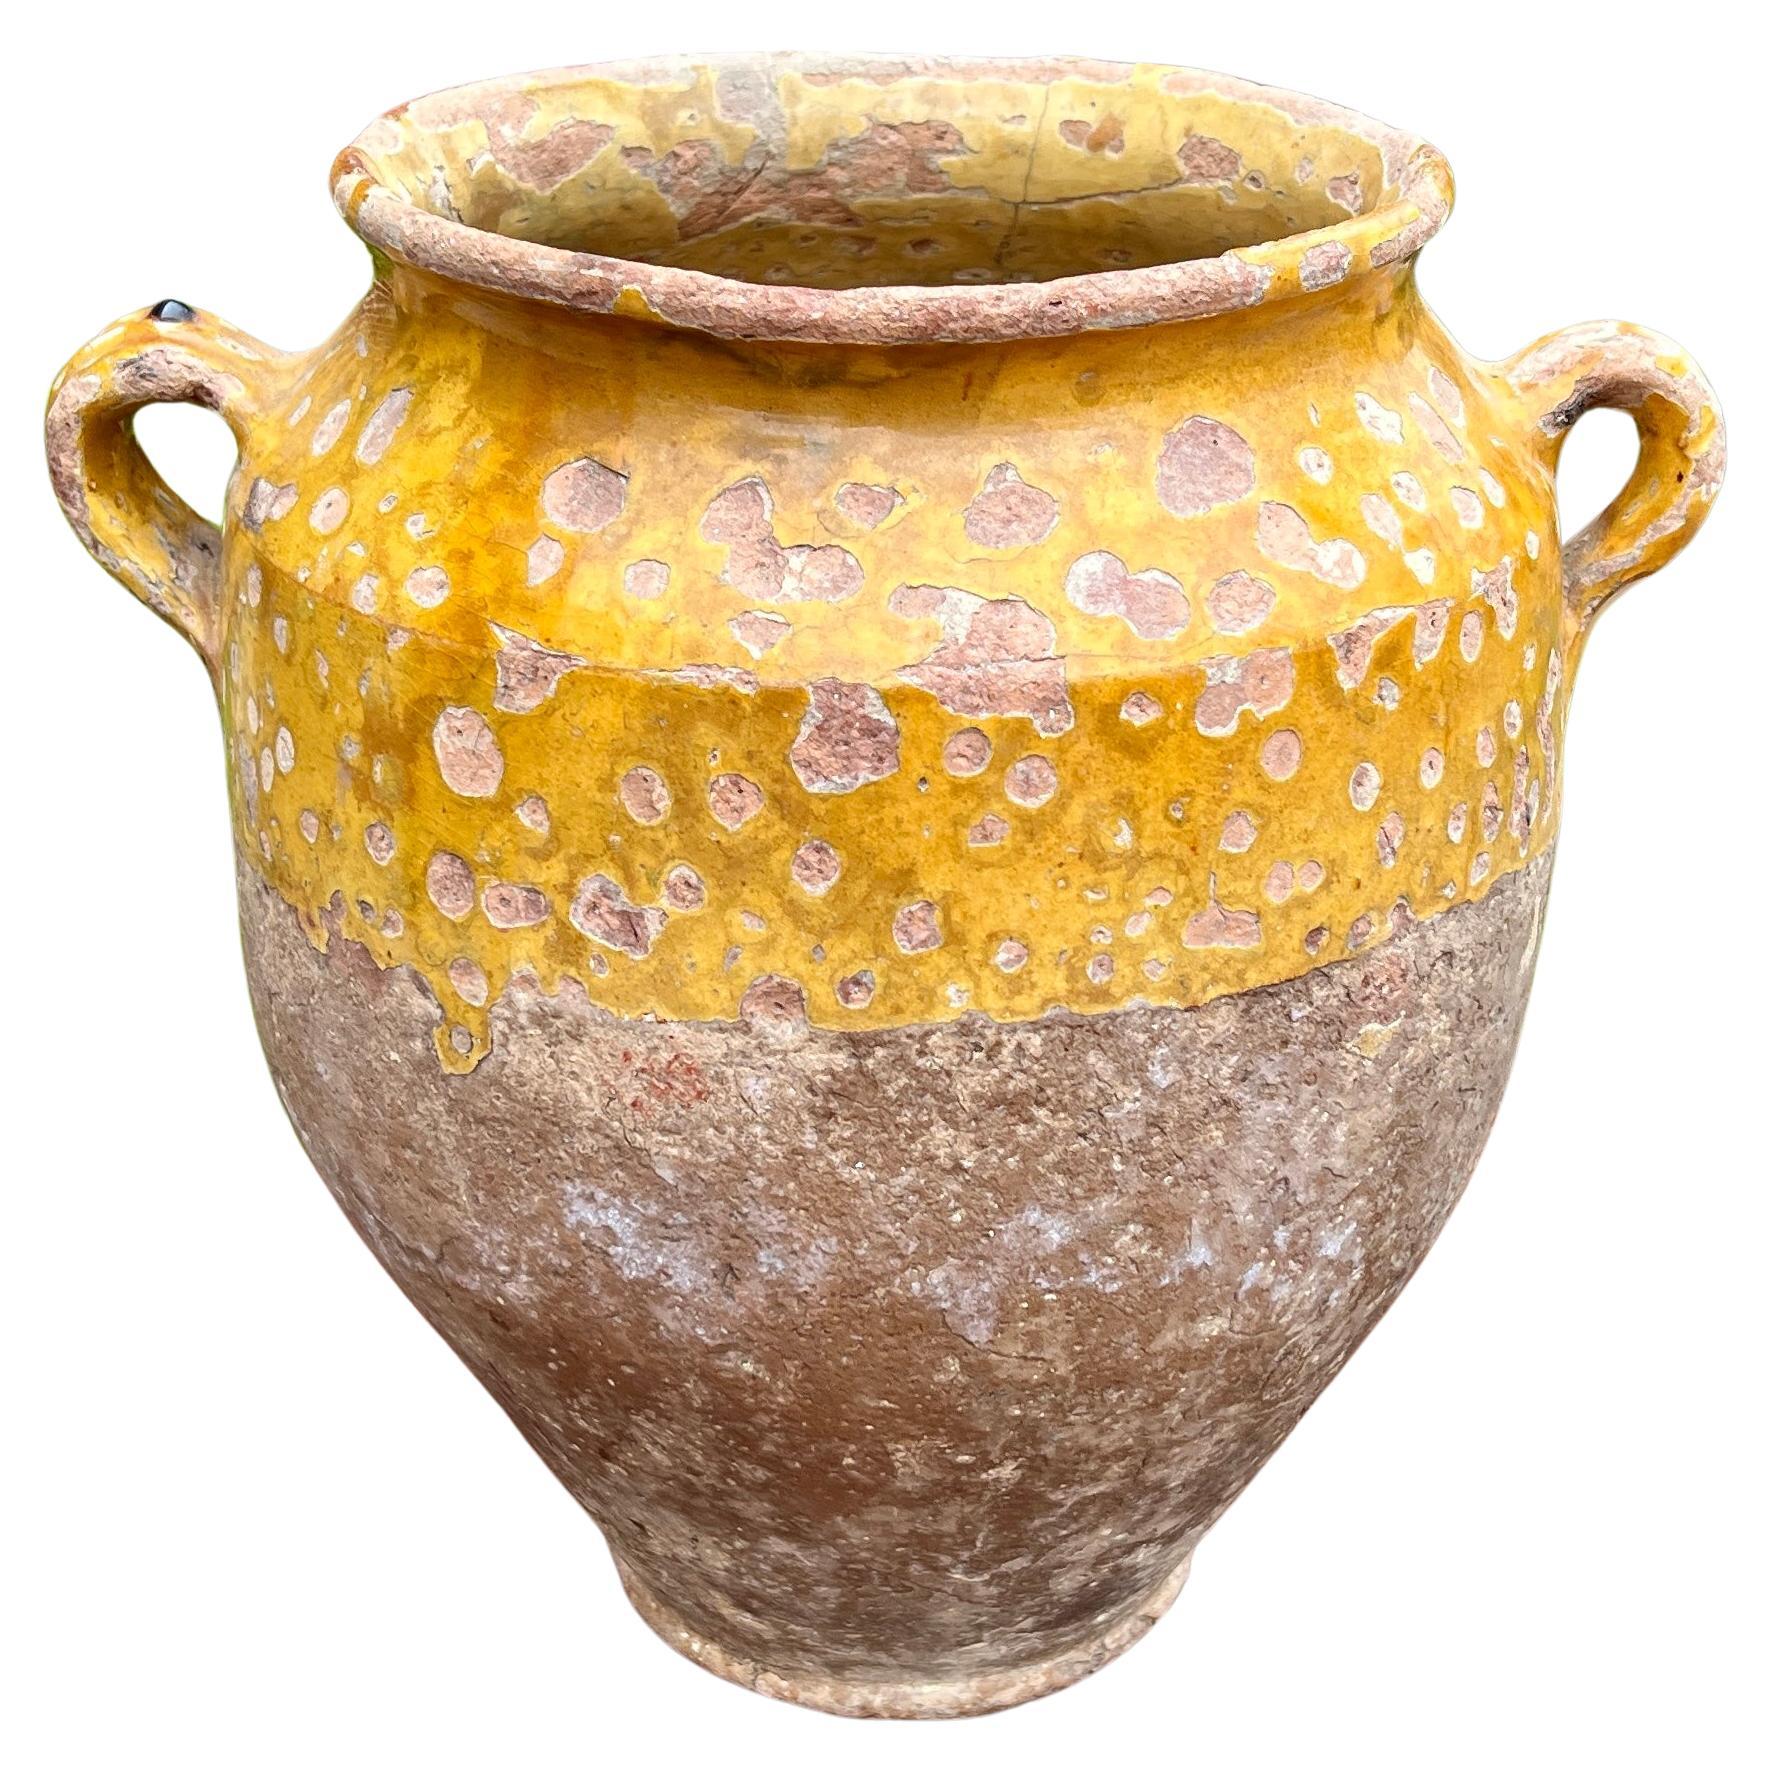 Ancien pot à confiture français, pot à confiture vernissé jaune ocre grand #1